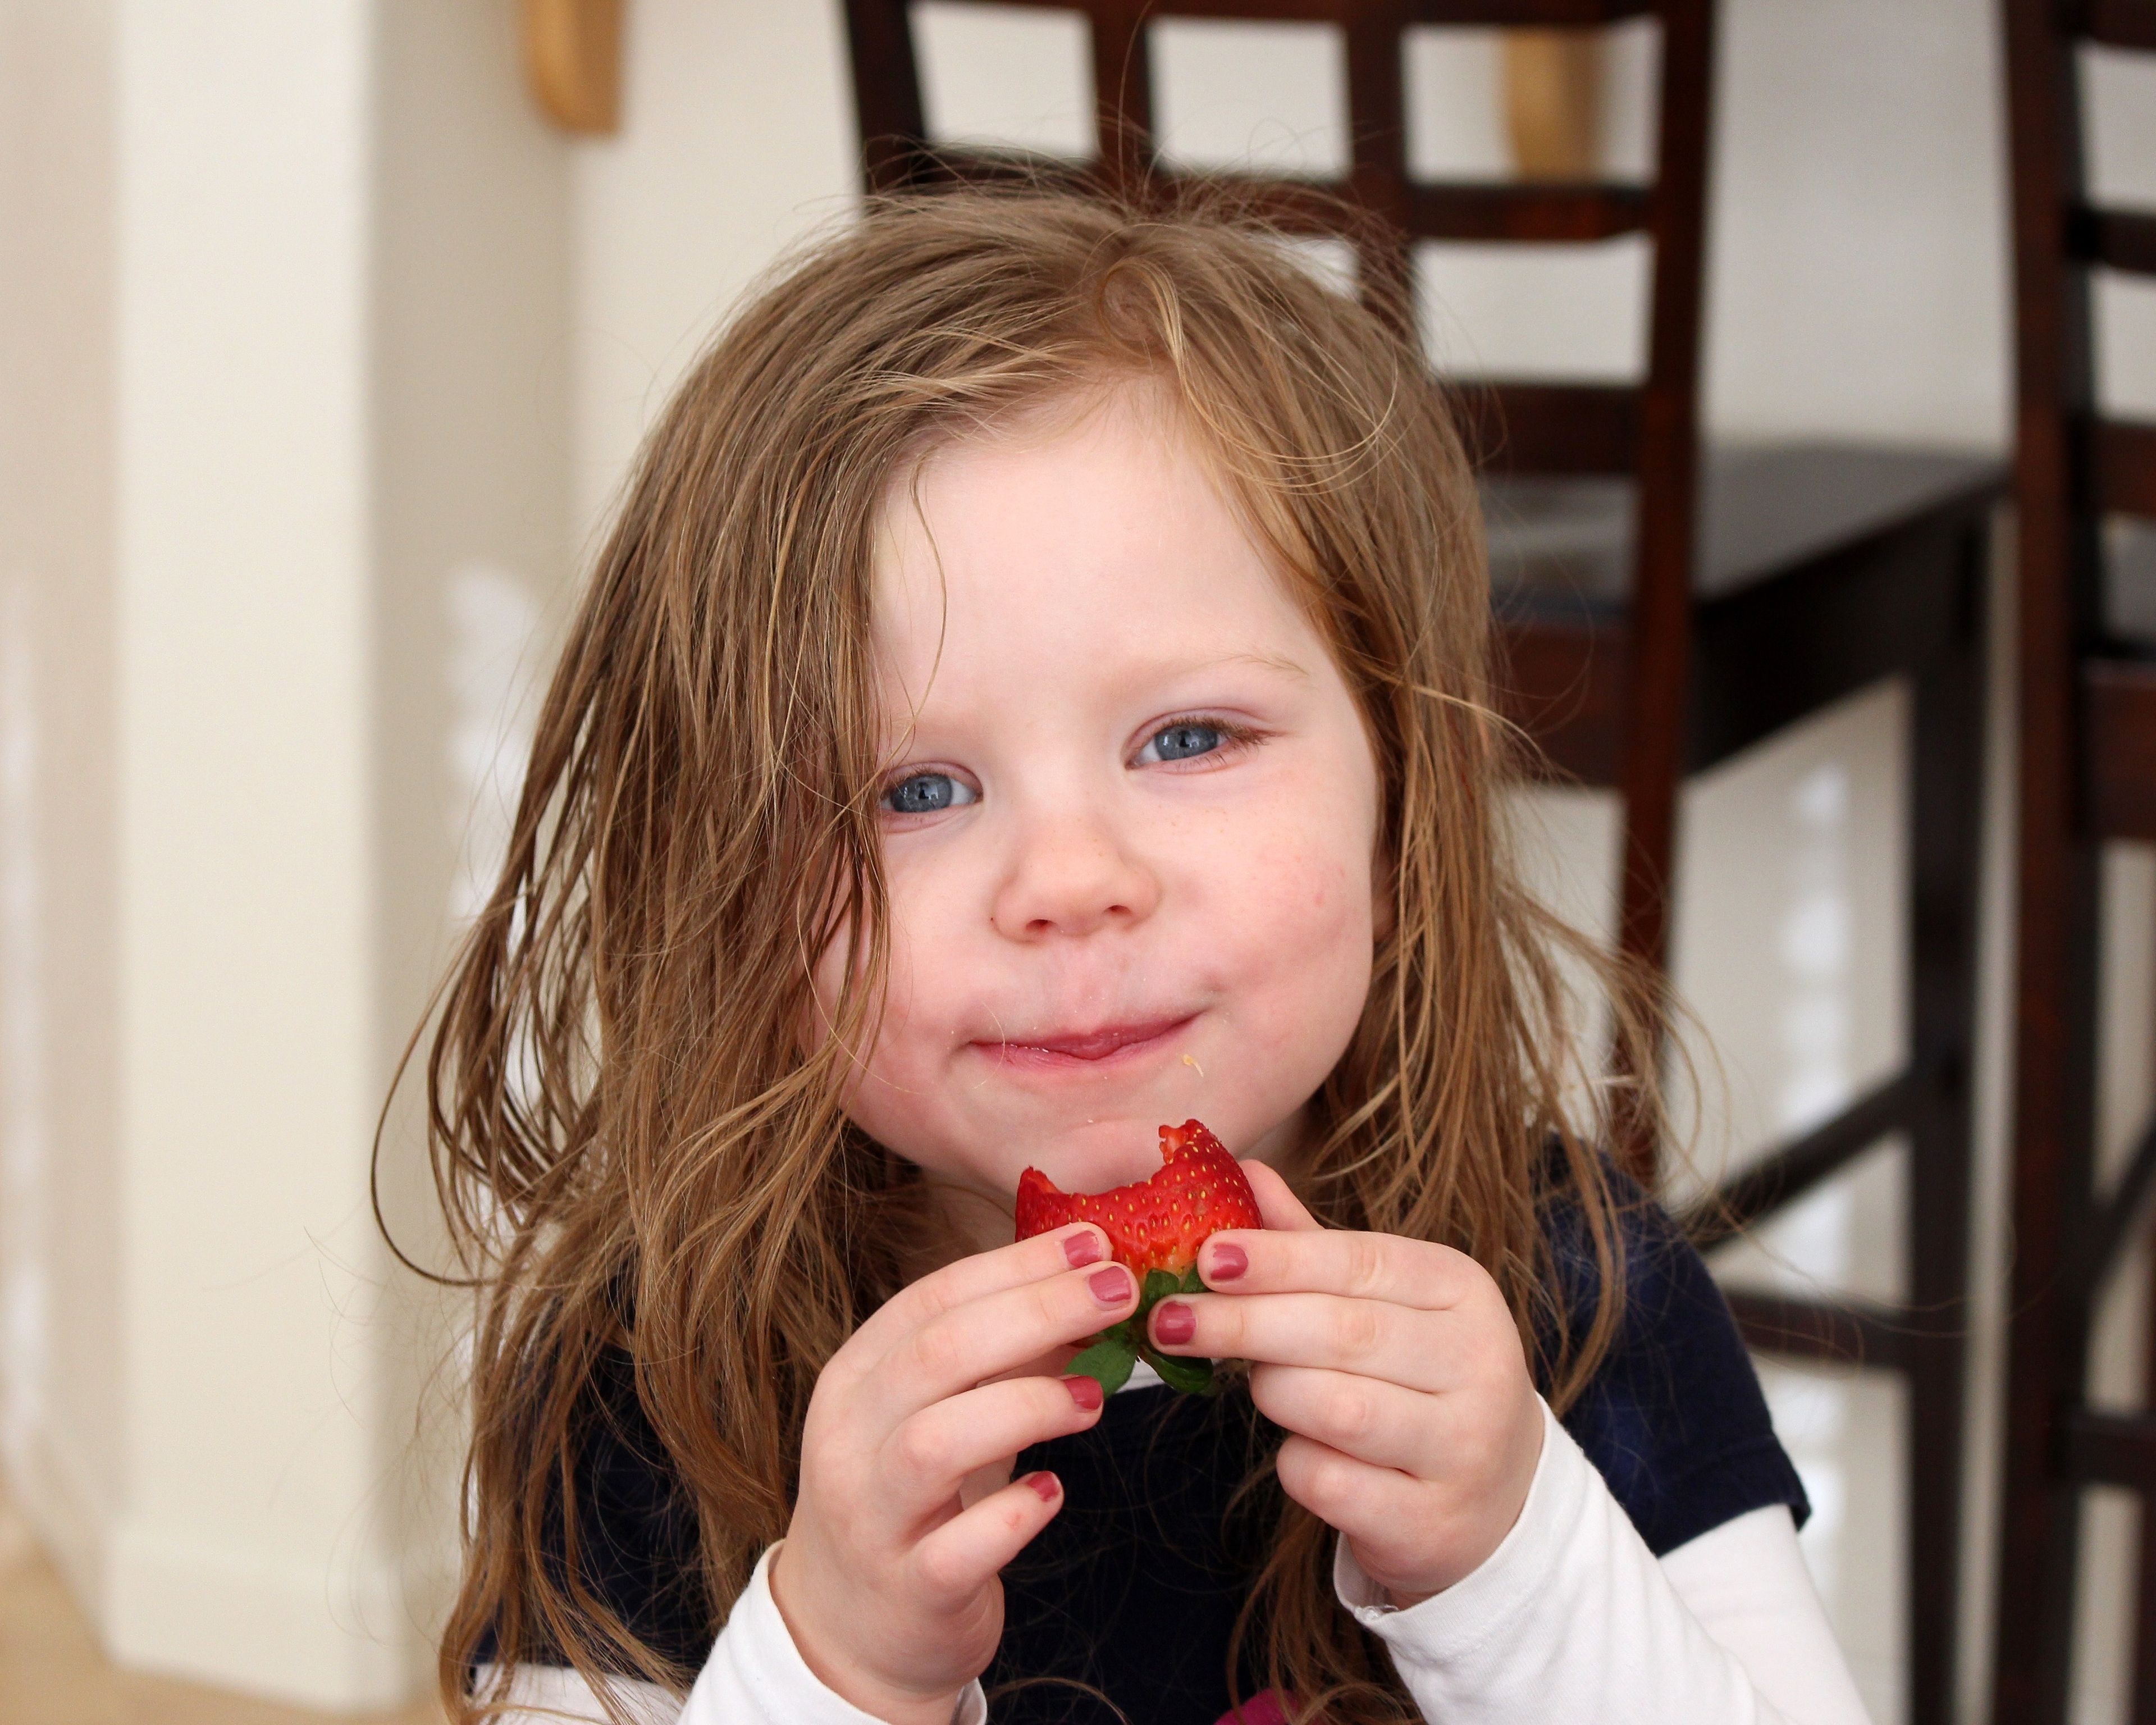 A little girl eats a strawberry.